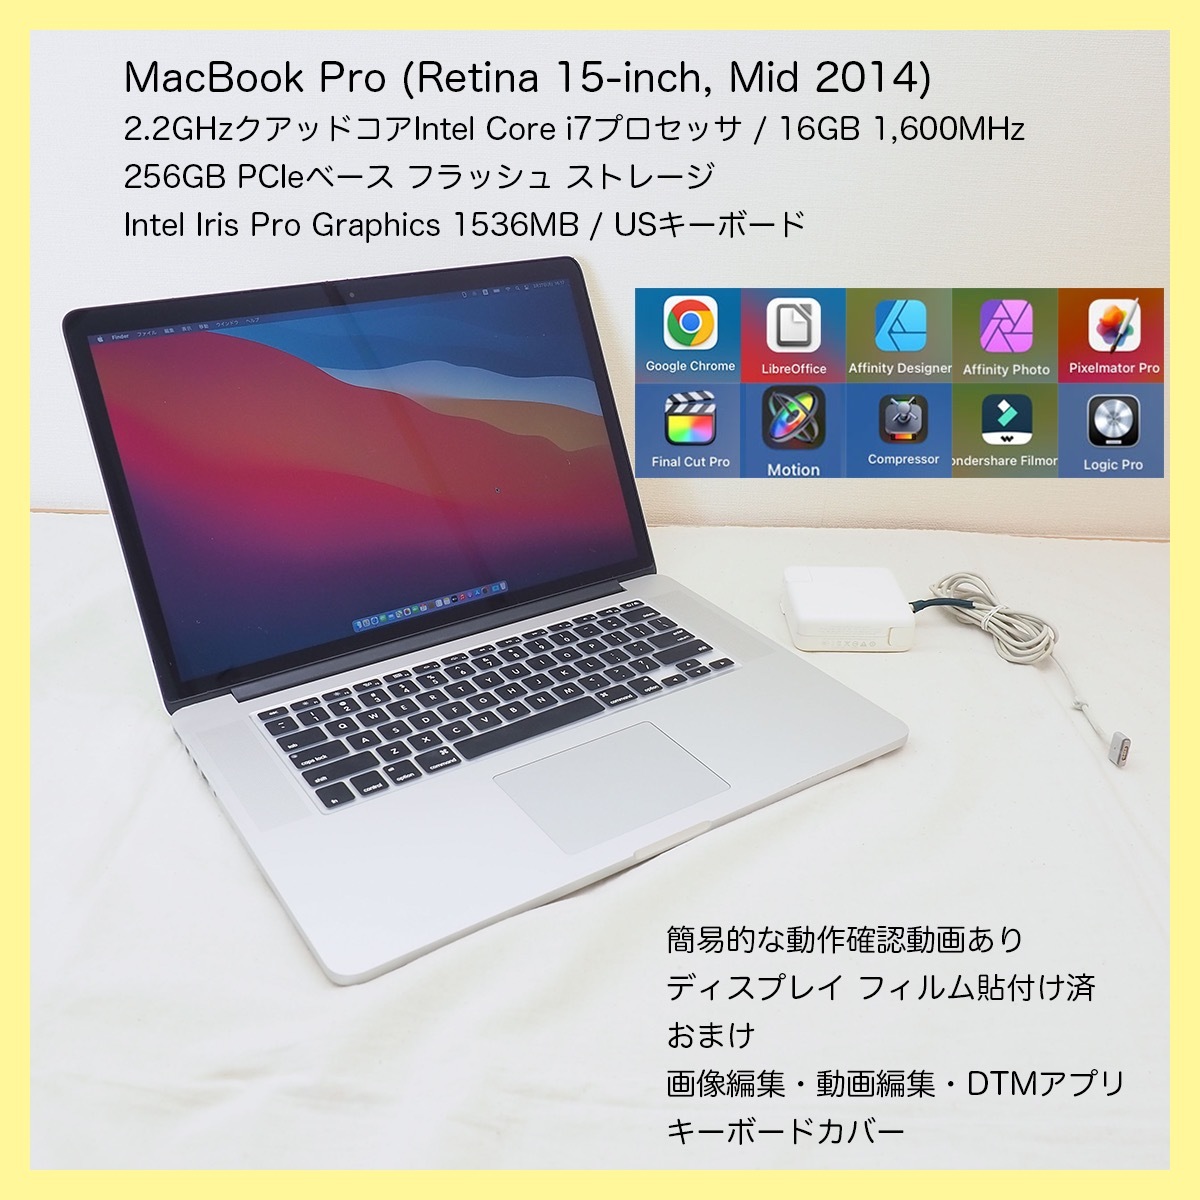 ねます】 MacBook Pro (Retina, 15-inch, Mid 2014) i7クアッドコア 